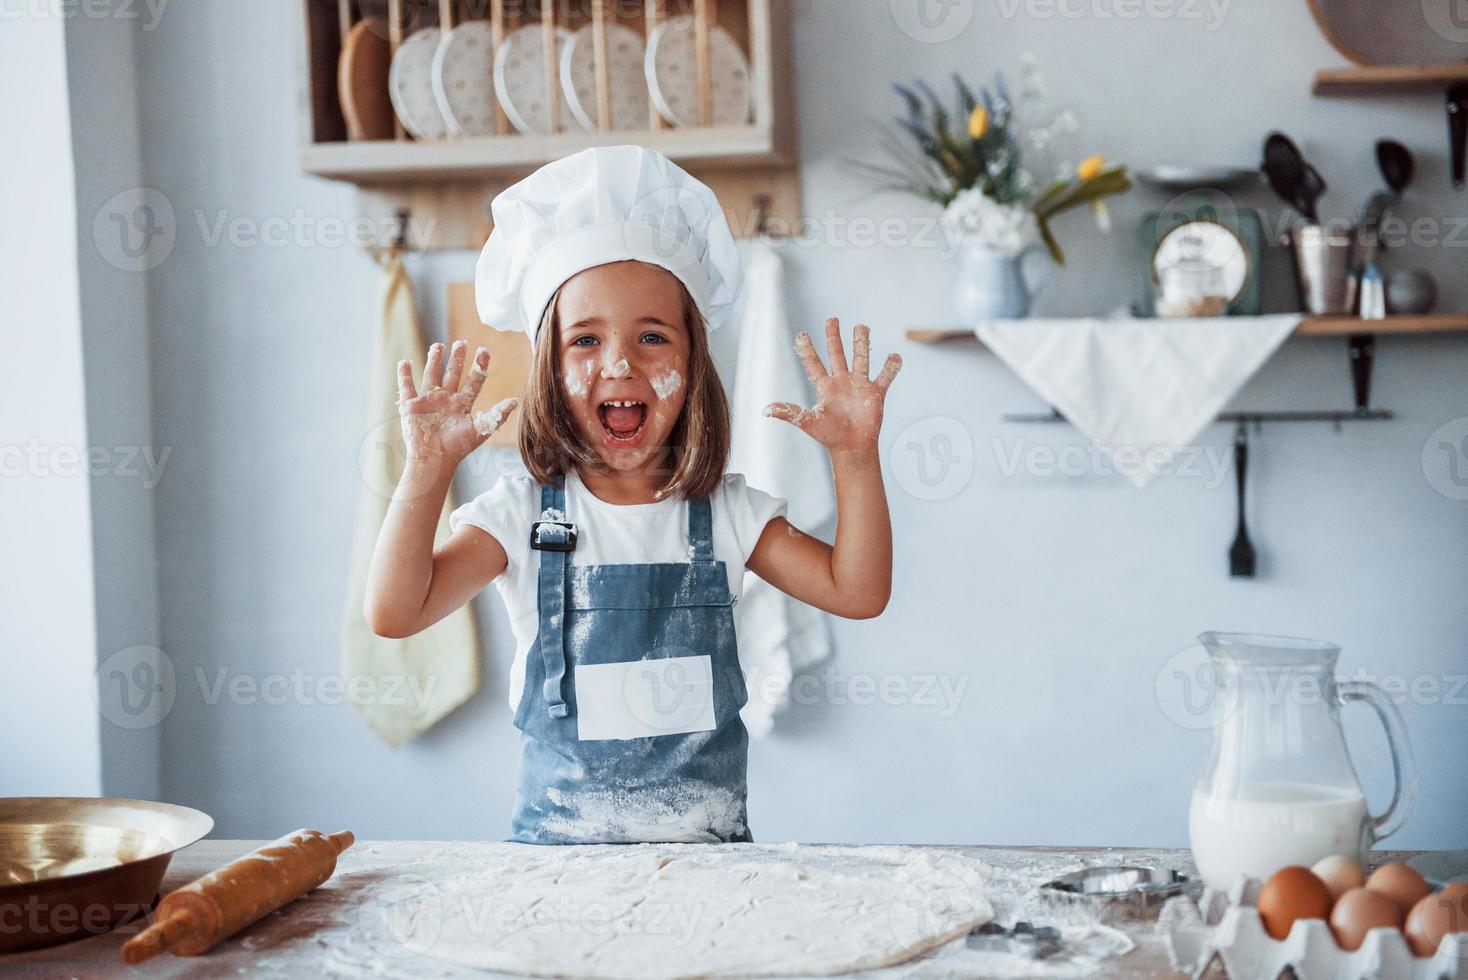 divirtiéndose. niño lindo con uniforme de chef blanco preparando comida en la cocina foto